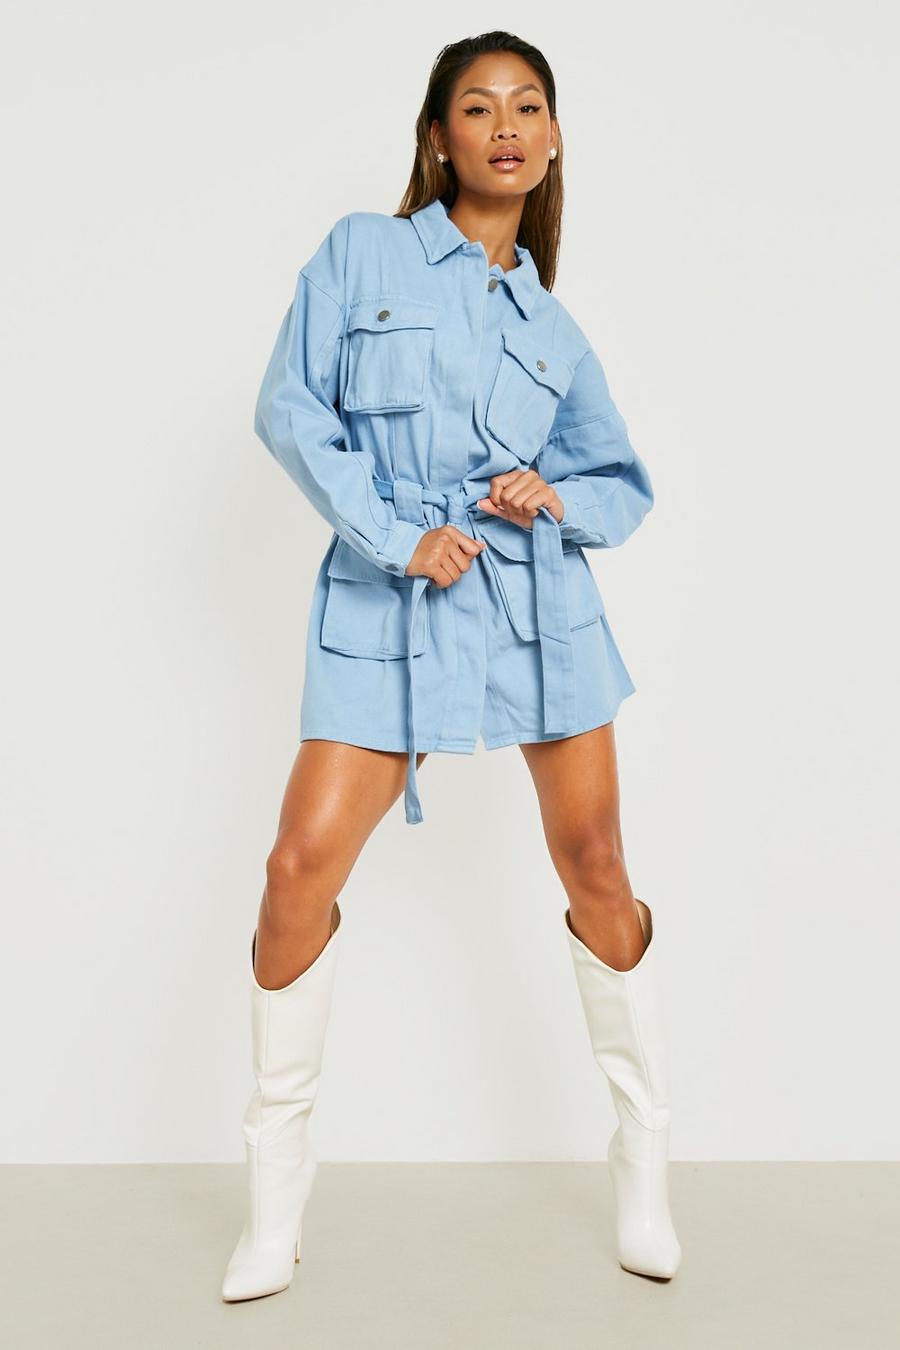 Megan Fox - Robe chemise premium style utilitaire - Disponible jusqu'au 52, Blue bleu